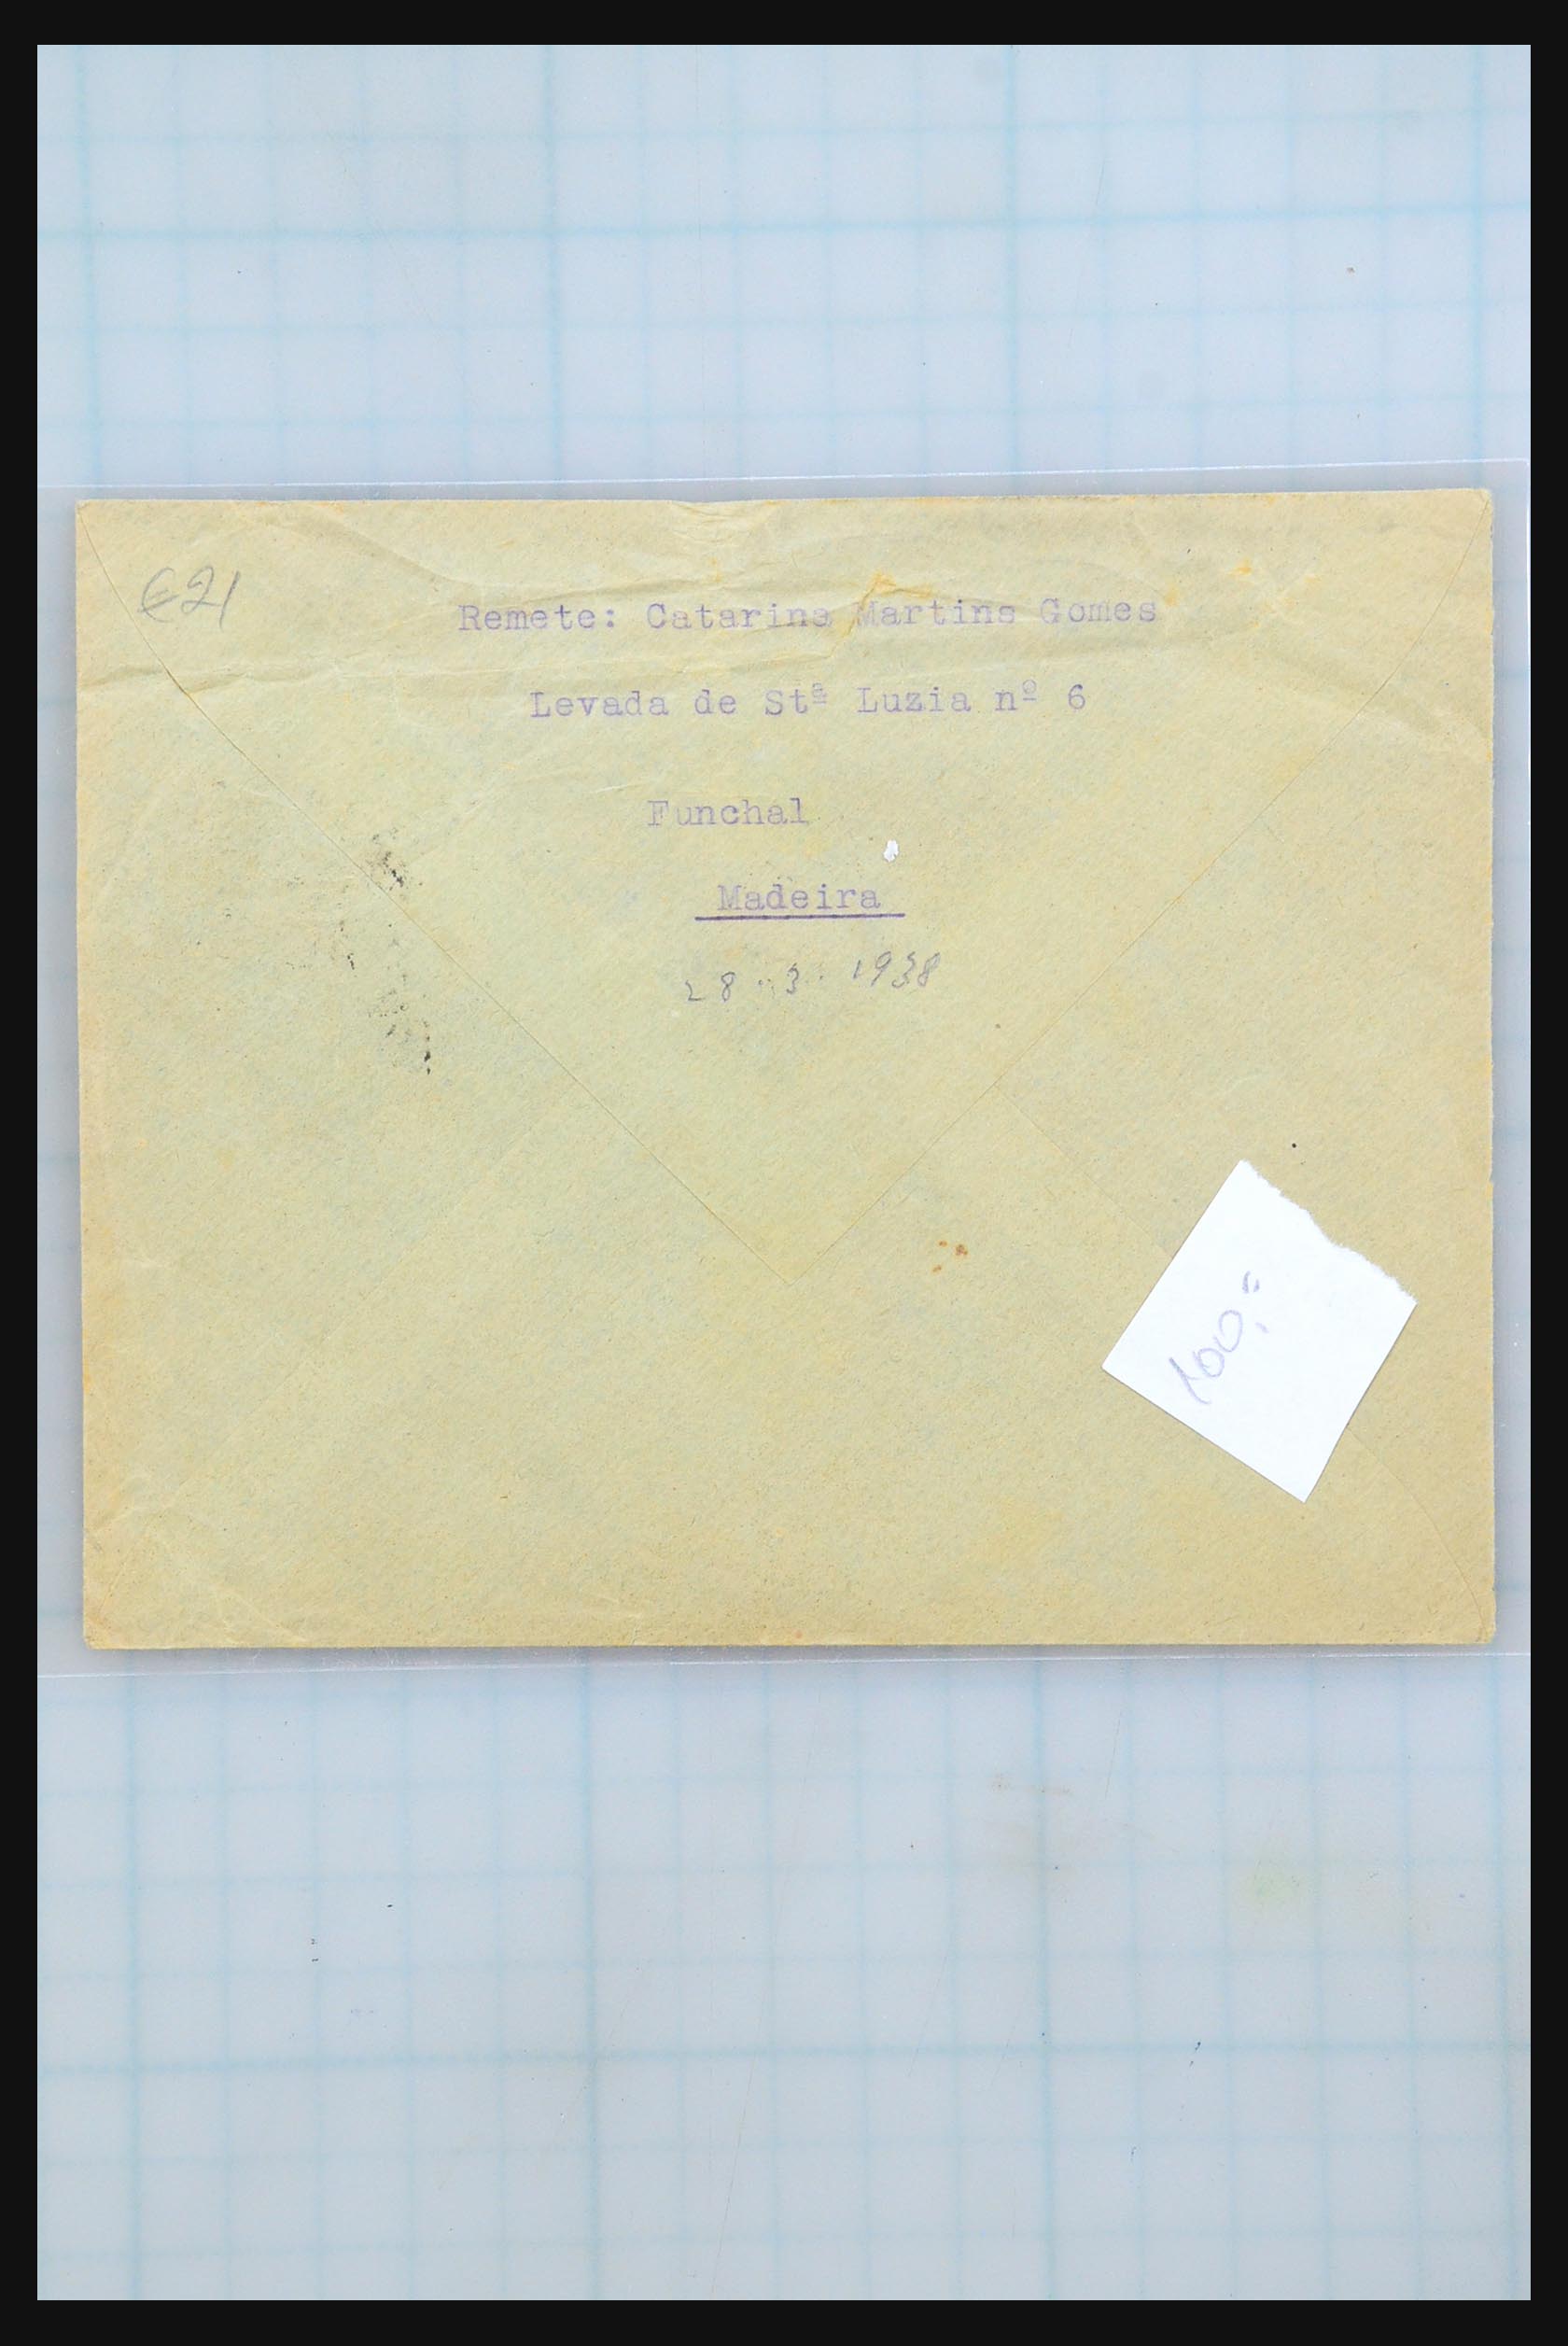 31358 261 - 31358 Portugal/Luxemburg/Griekenland brieven 1880-1960.